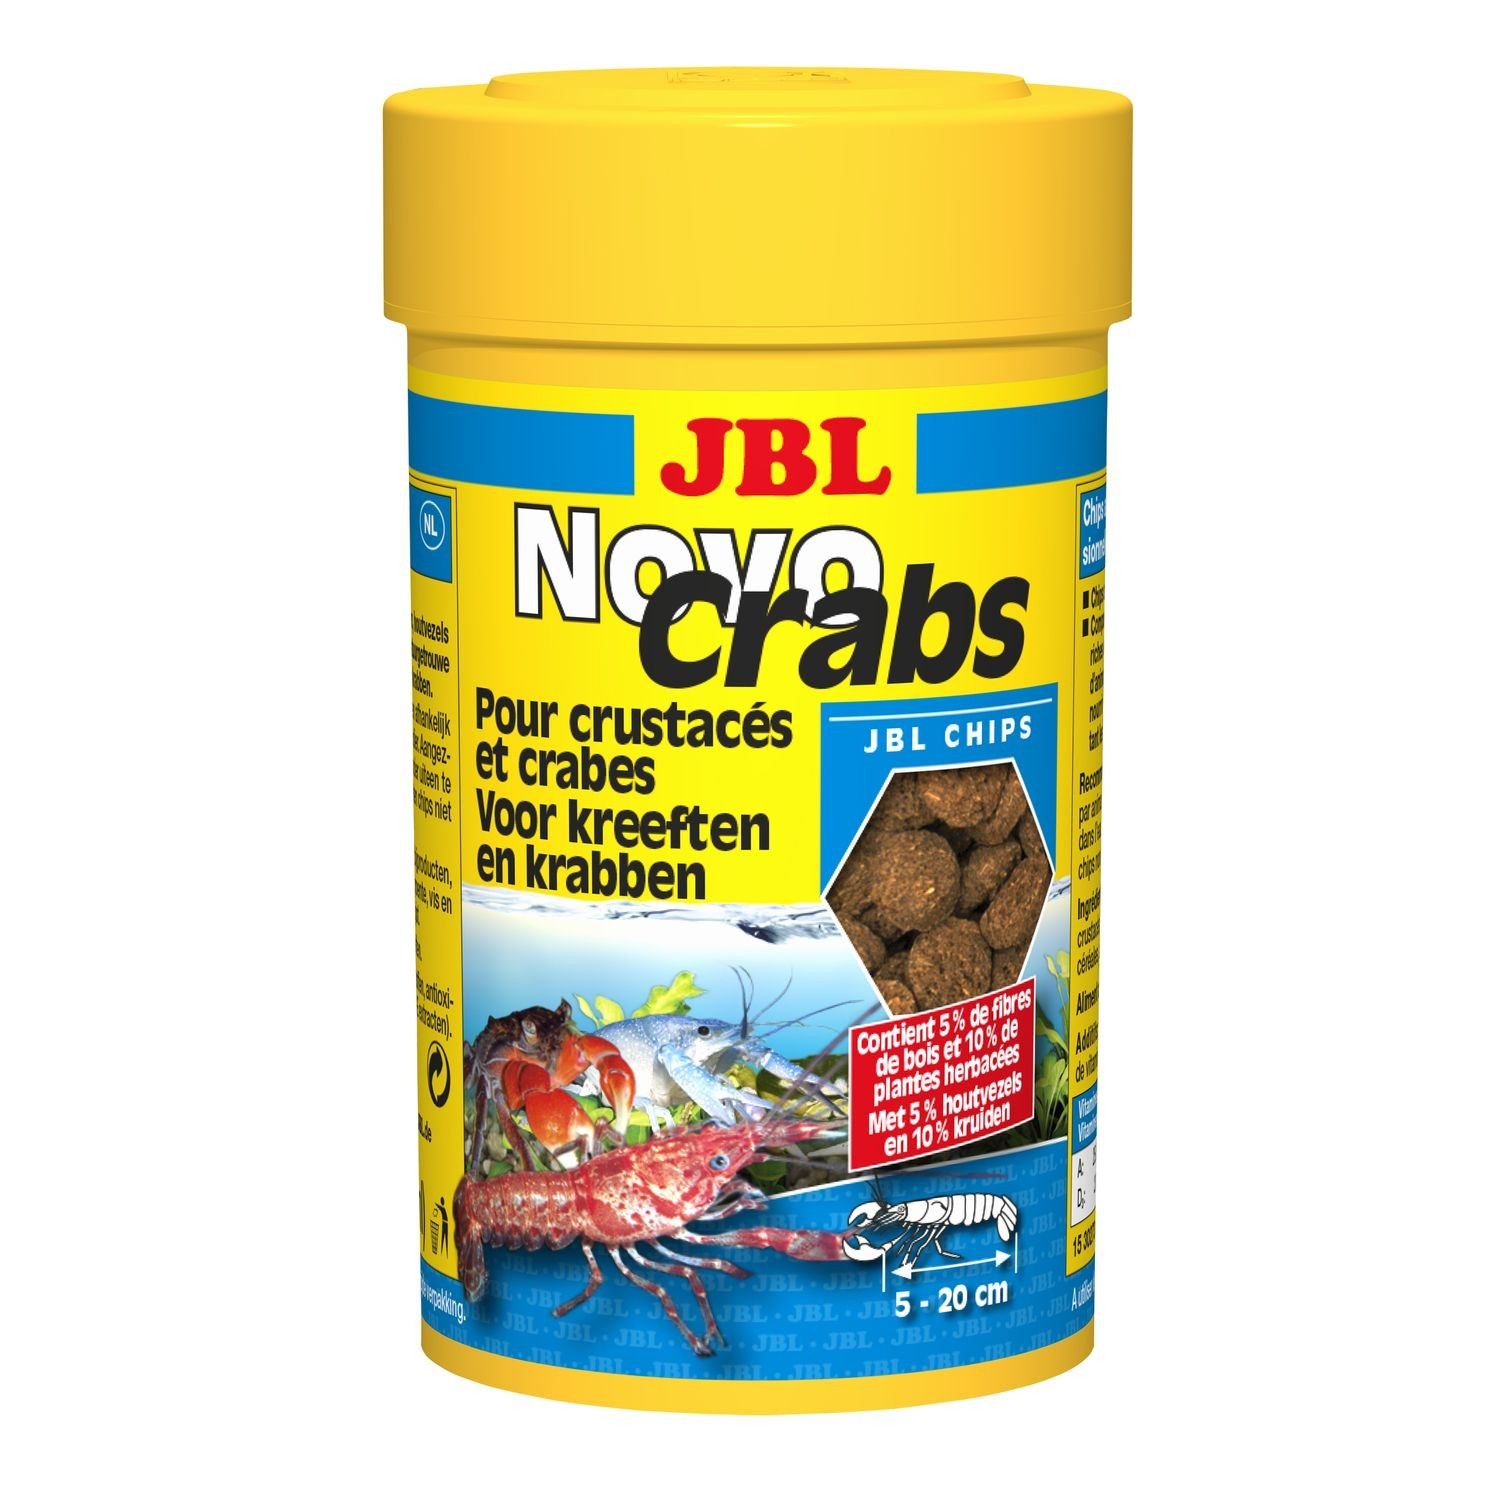 JBL NovoCrabs comida para crustáceos